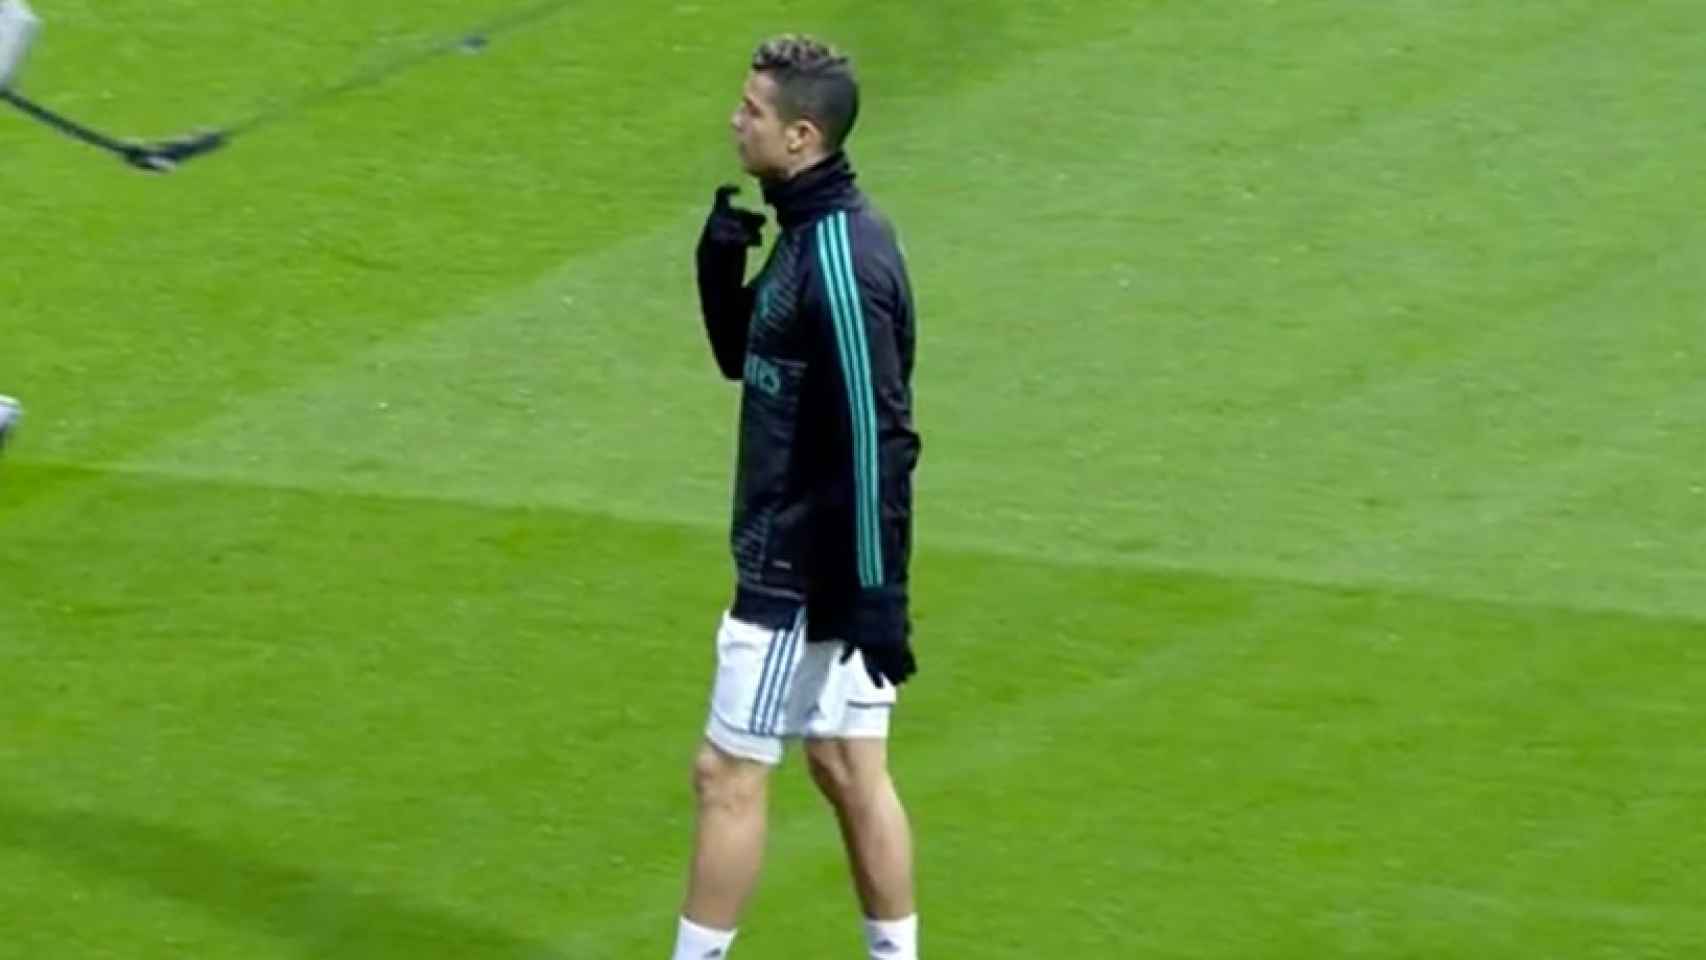 Cristiano Ronaldo durante el calentamiento frente al Villarreal